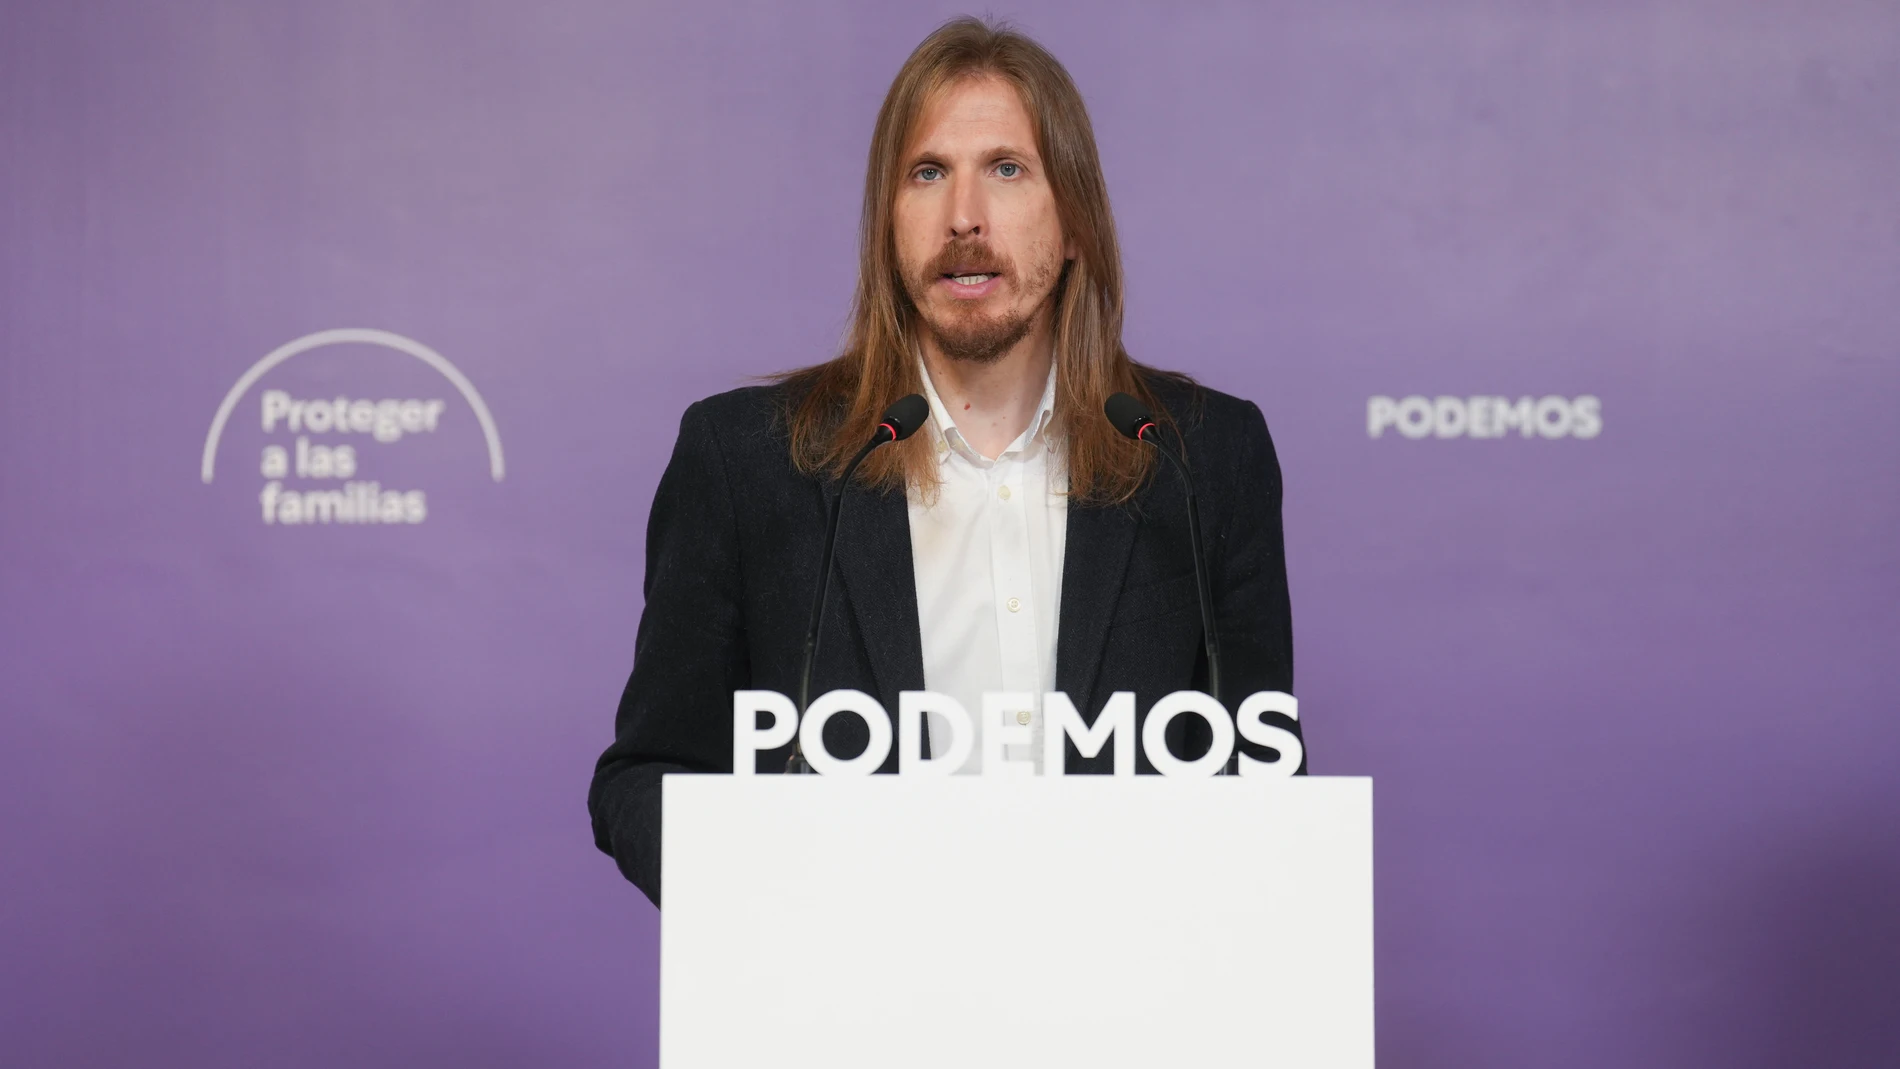 El portavoz de Podemos, Pablo Fernández durante la rueda de prensa ofrecida este lunes en la sede de la formación, en Madrid. EFE/ Borja Sanchez-trillo